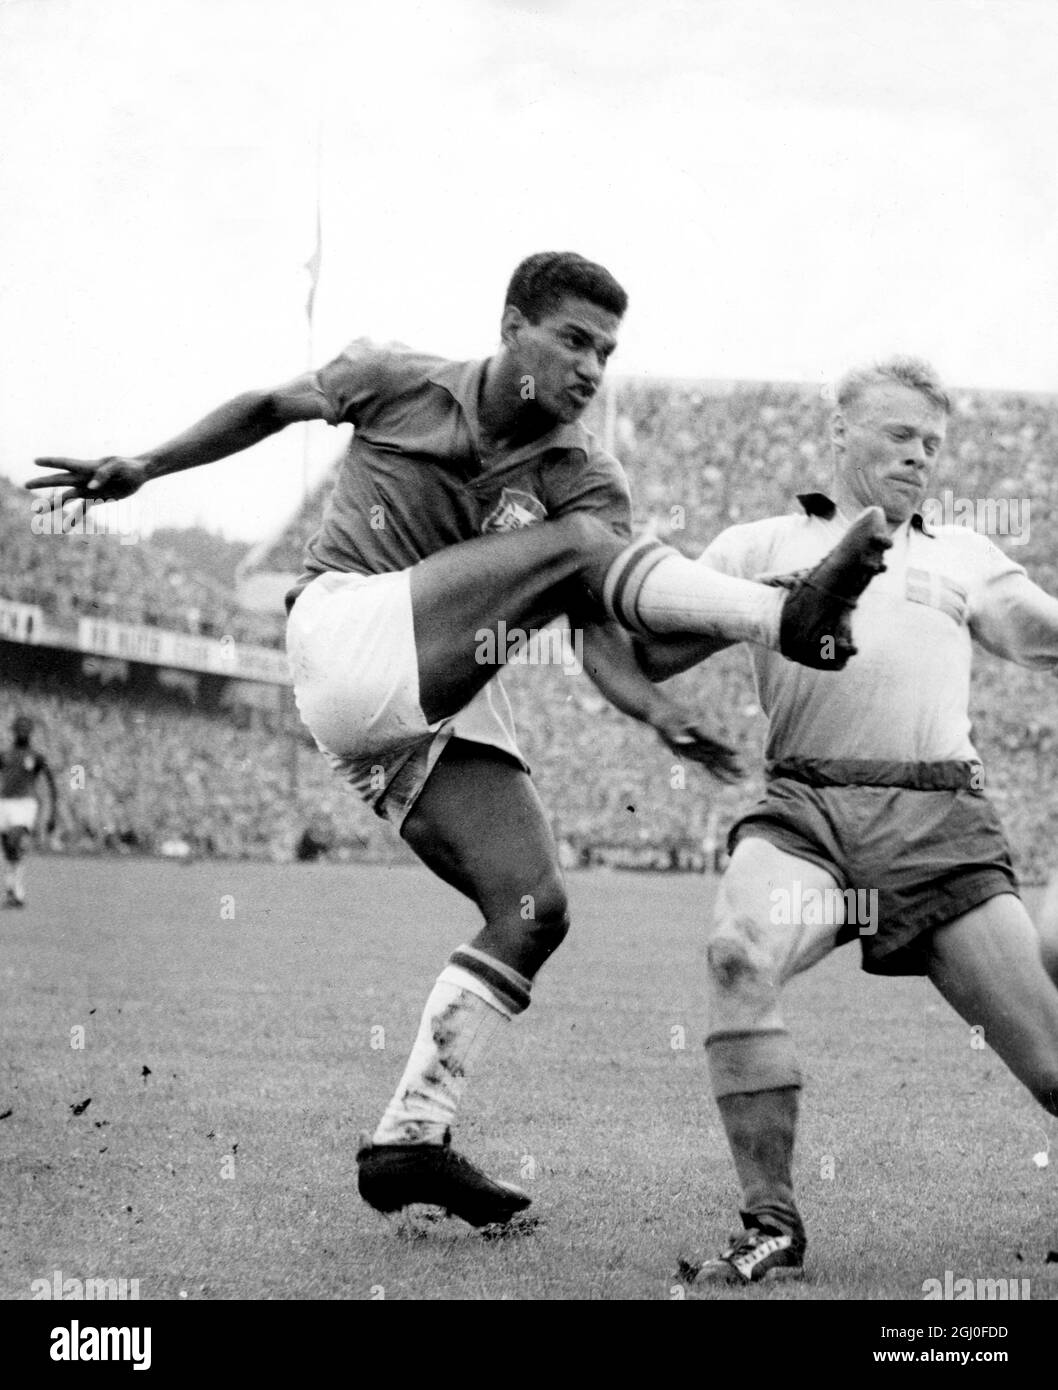 Finale della Coppa del mondo 1958 Brasile / Svezia Garrincha del Brasile  durante la finale della Coppa del mondo tra Svezia e Brasile. 1 luglio 1958  Foto stock - Alamy